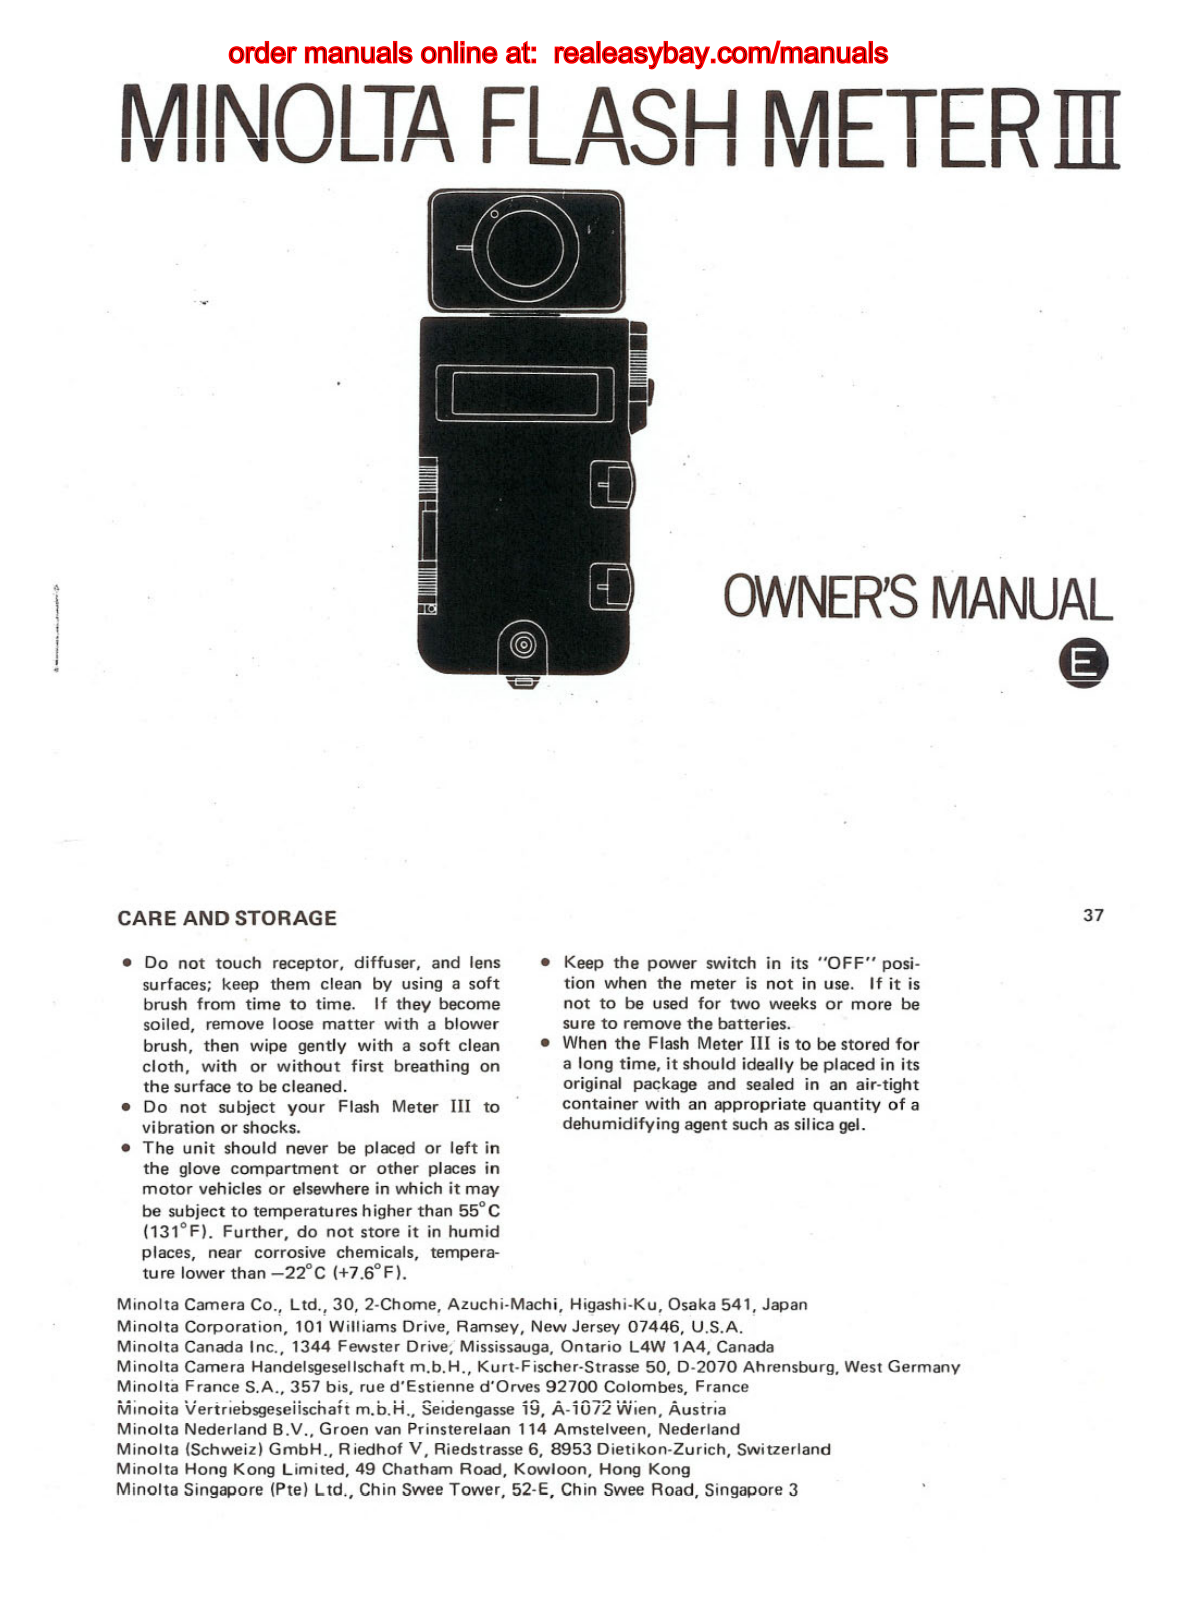 Minolta FLASH METER III user Manual